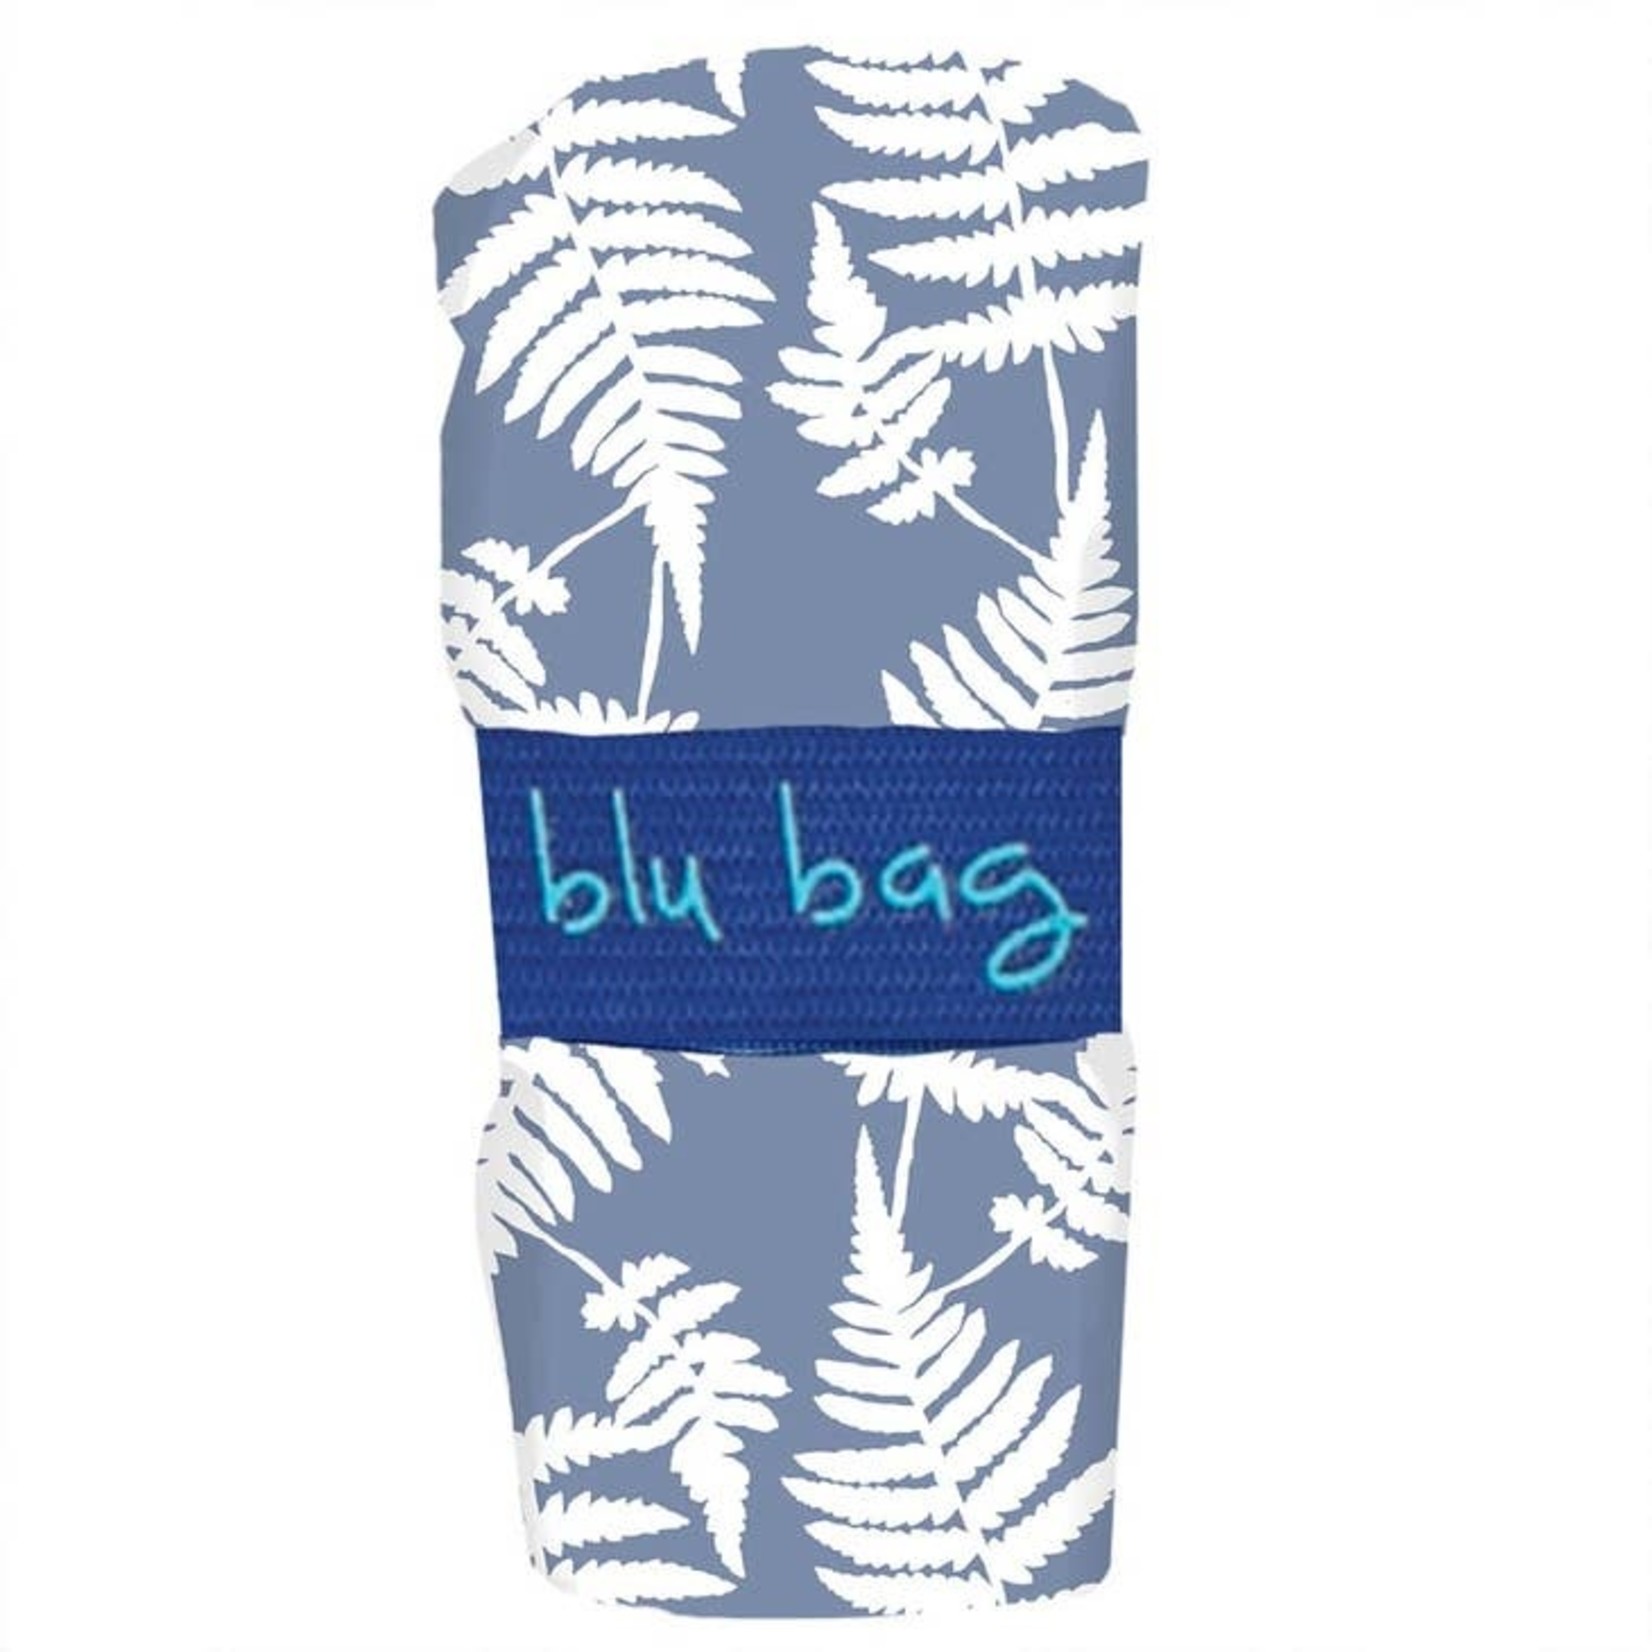 Blu Bag in Fern